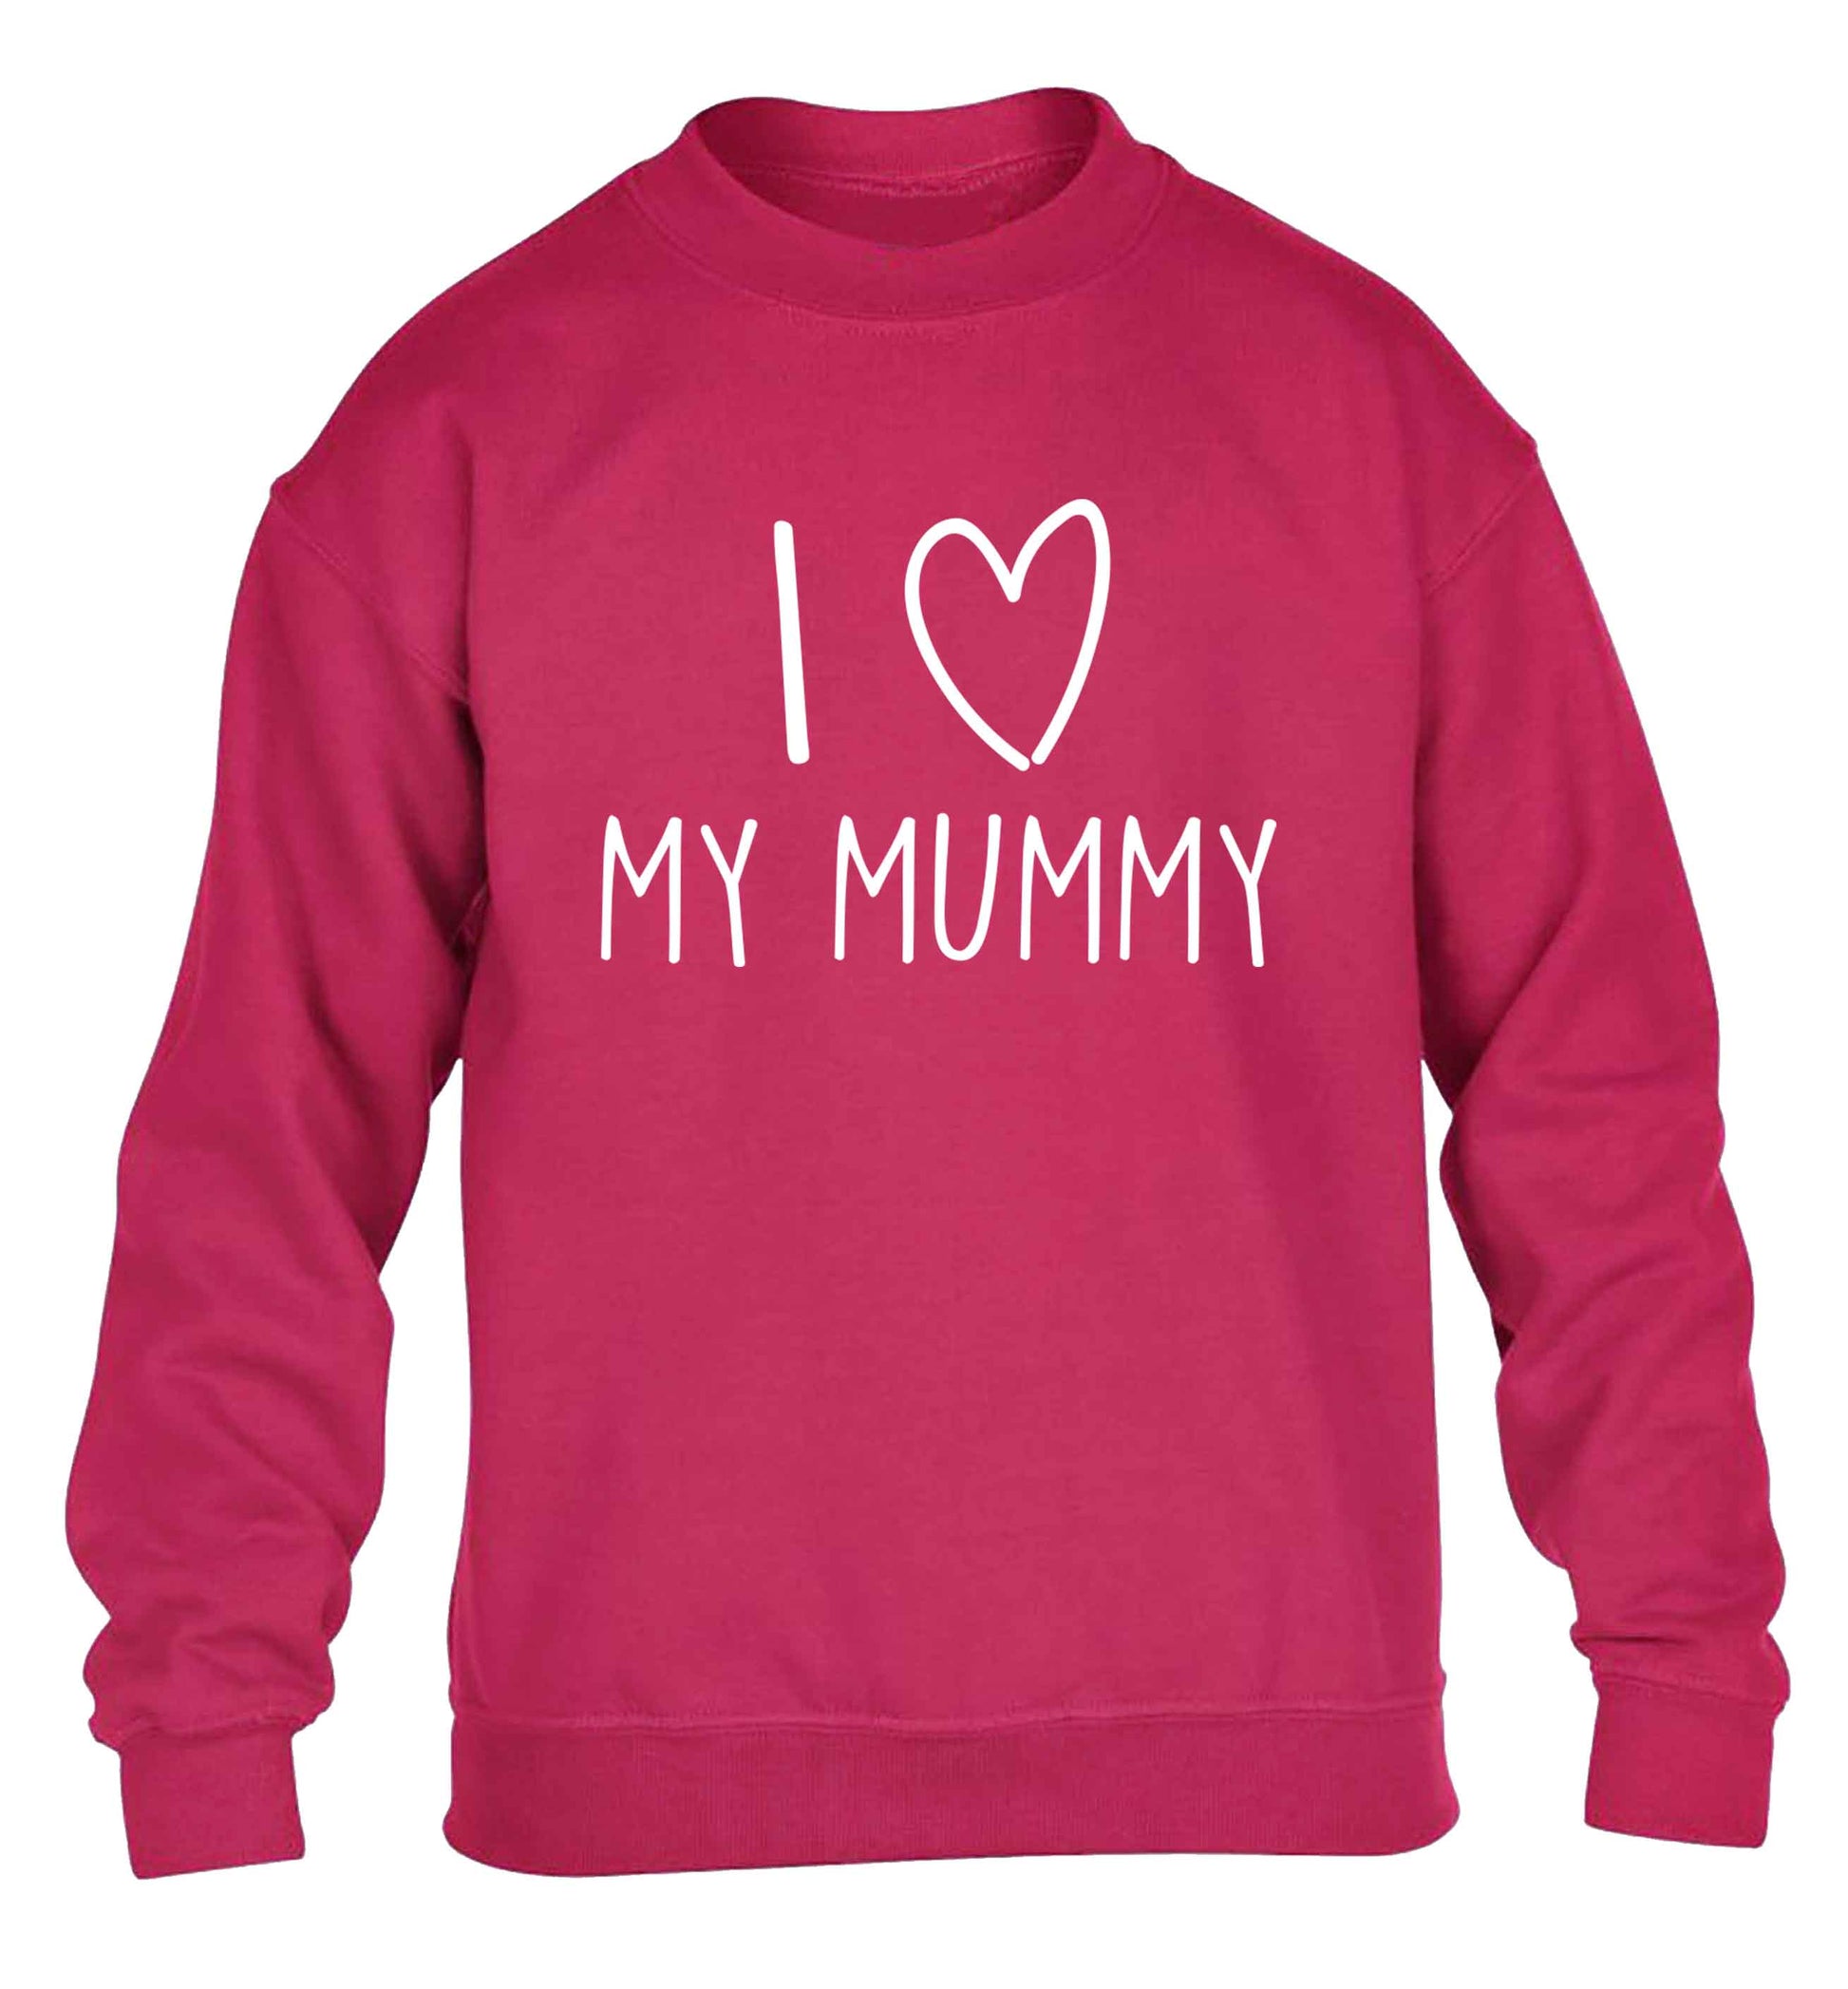 I love my mummy children's pink sweater 12-13 Years